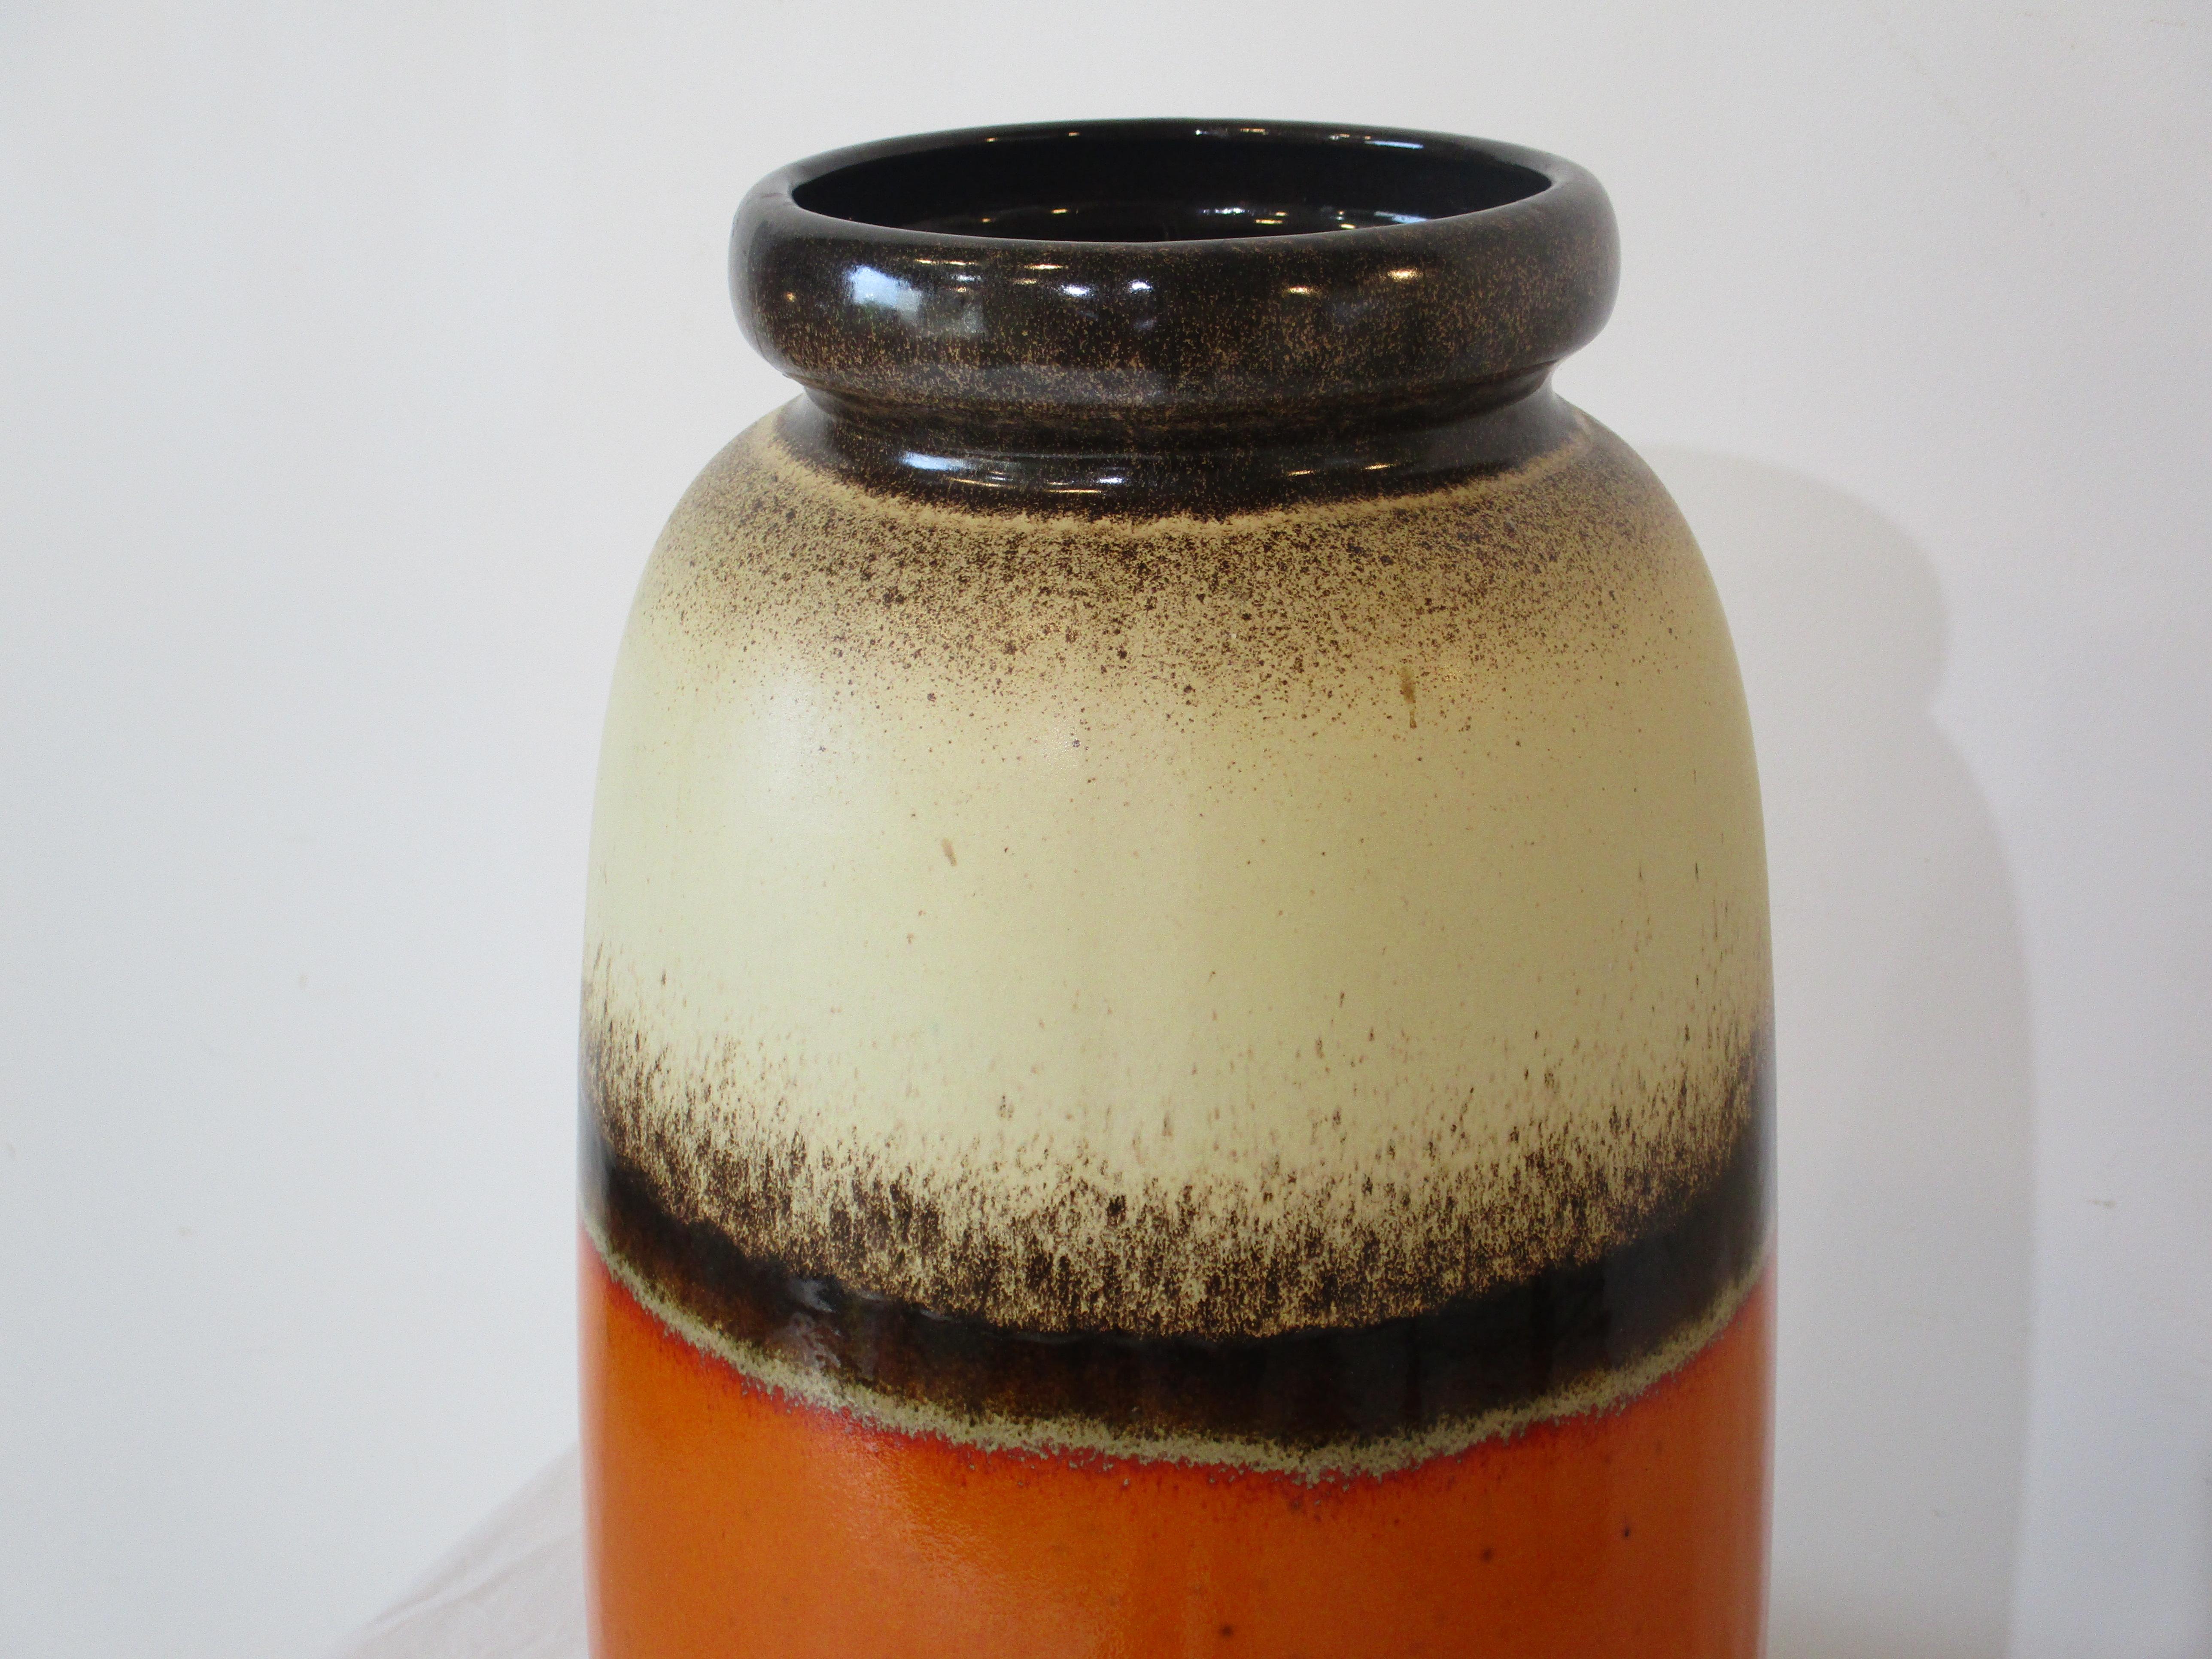 Eine sehr große Fat Lava Keramik Vase mit einem hellbraunen Körper mit braunen, dunkelbraunen und einem orangefarbenen Glasur in der Mitte. Feine Splattereffekte an den Rändern und die Farben verleihen diesem Stück eine tolle Mid Century-Atmosphäre.